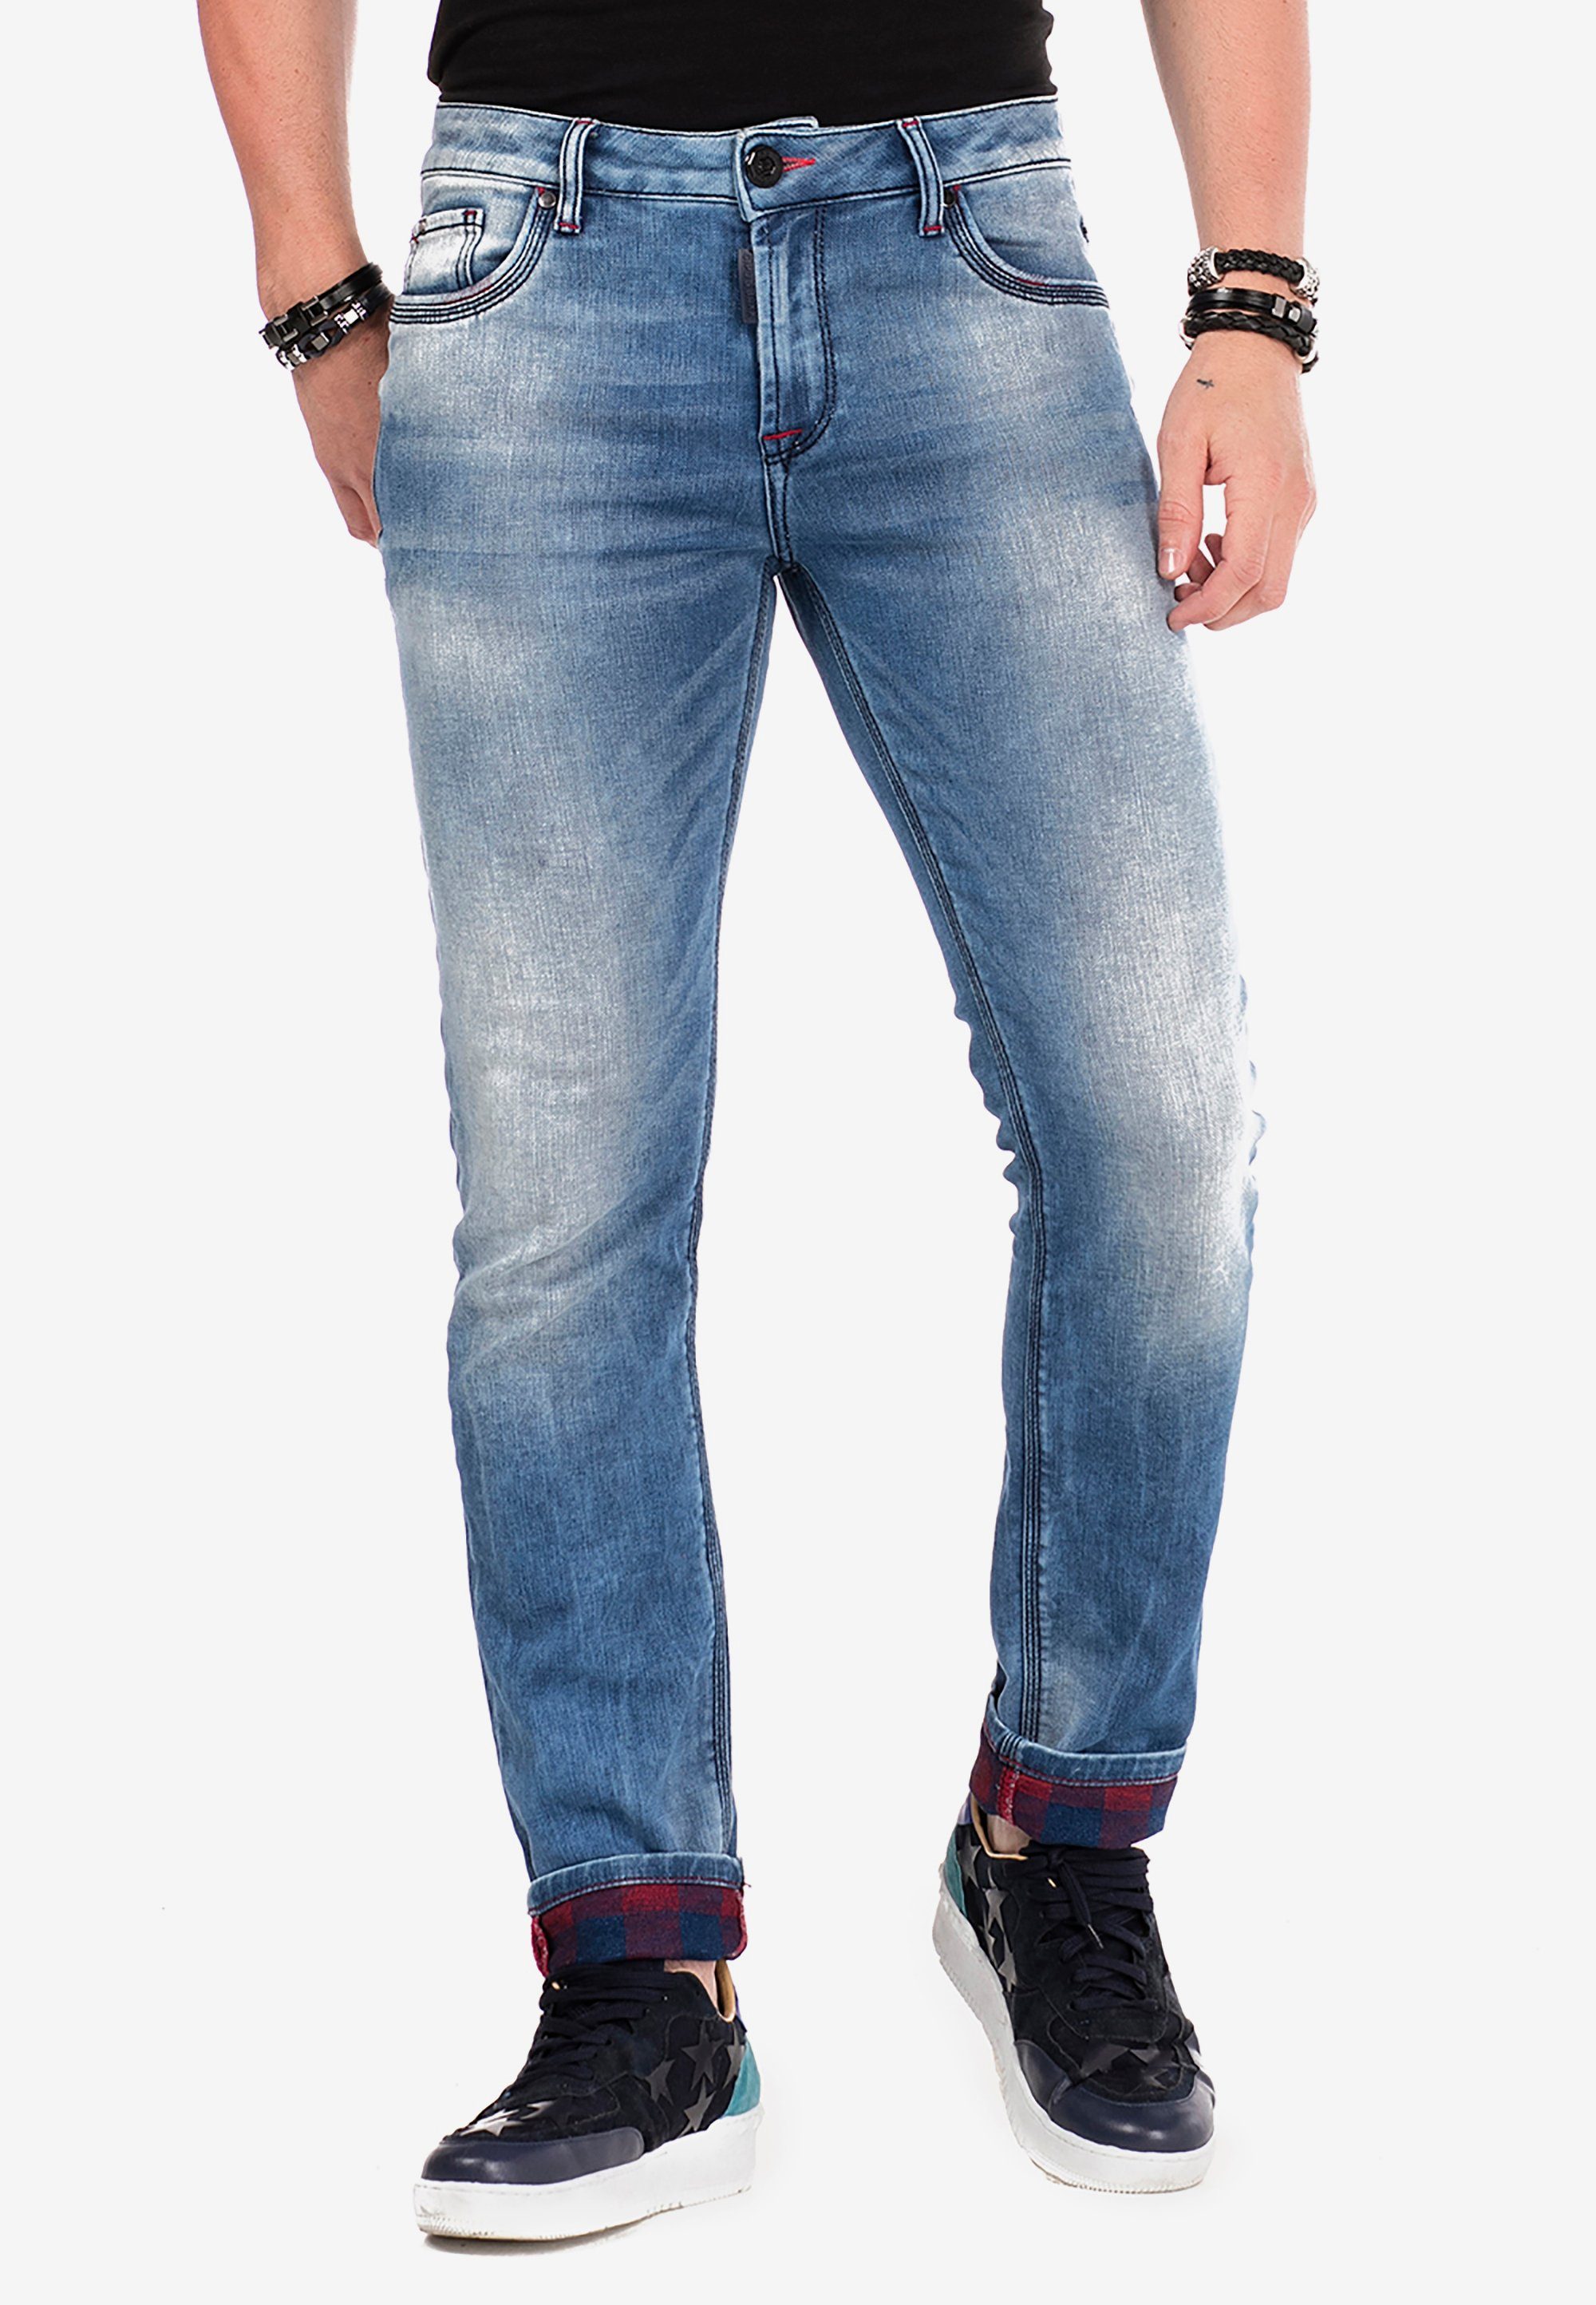 Baxx Cipo & Used im Look blau Slim-fit-Jeans